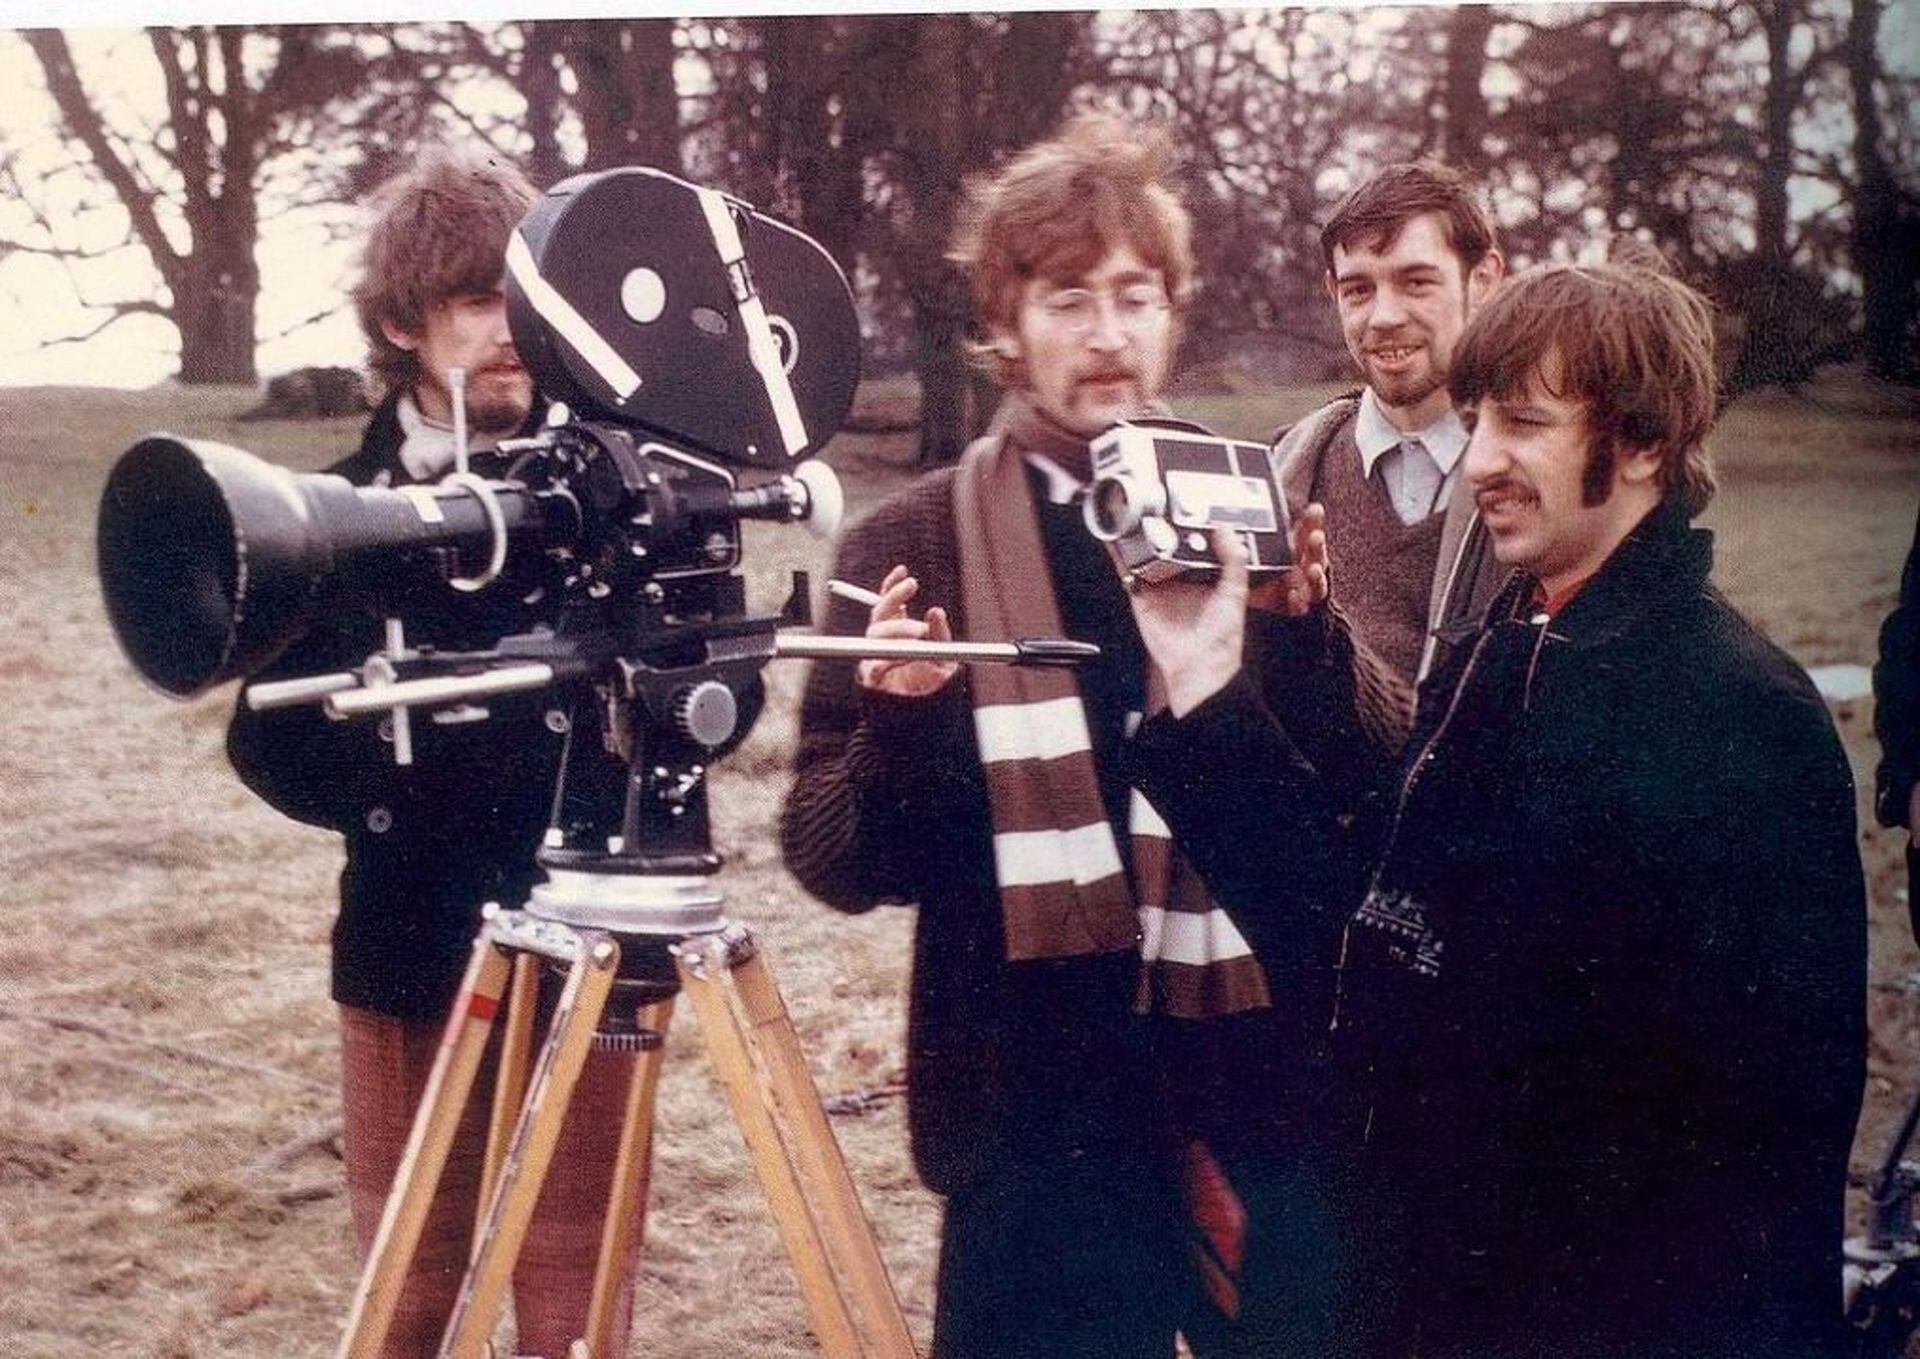 Imágenes de la filmación de "Strawberry Fields Forever", de The Beatles